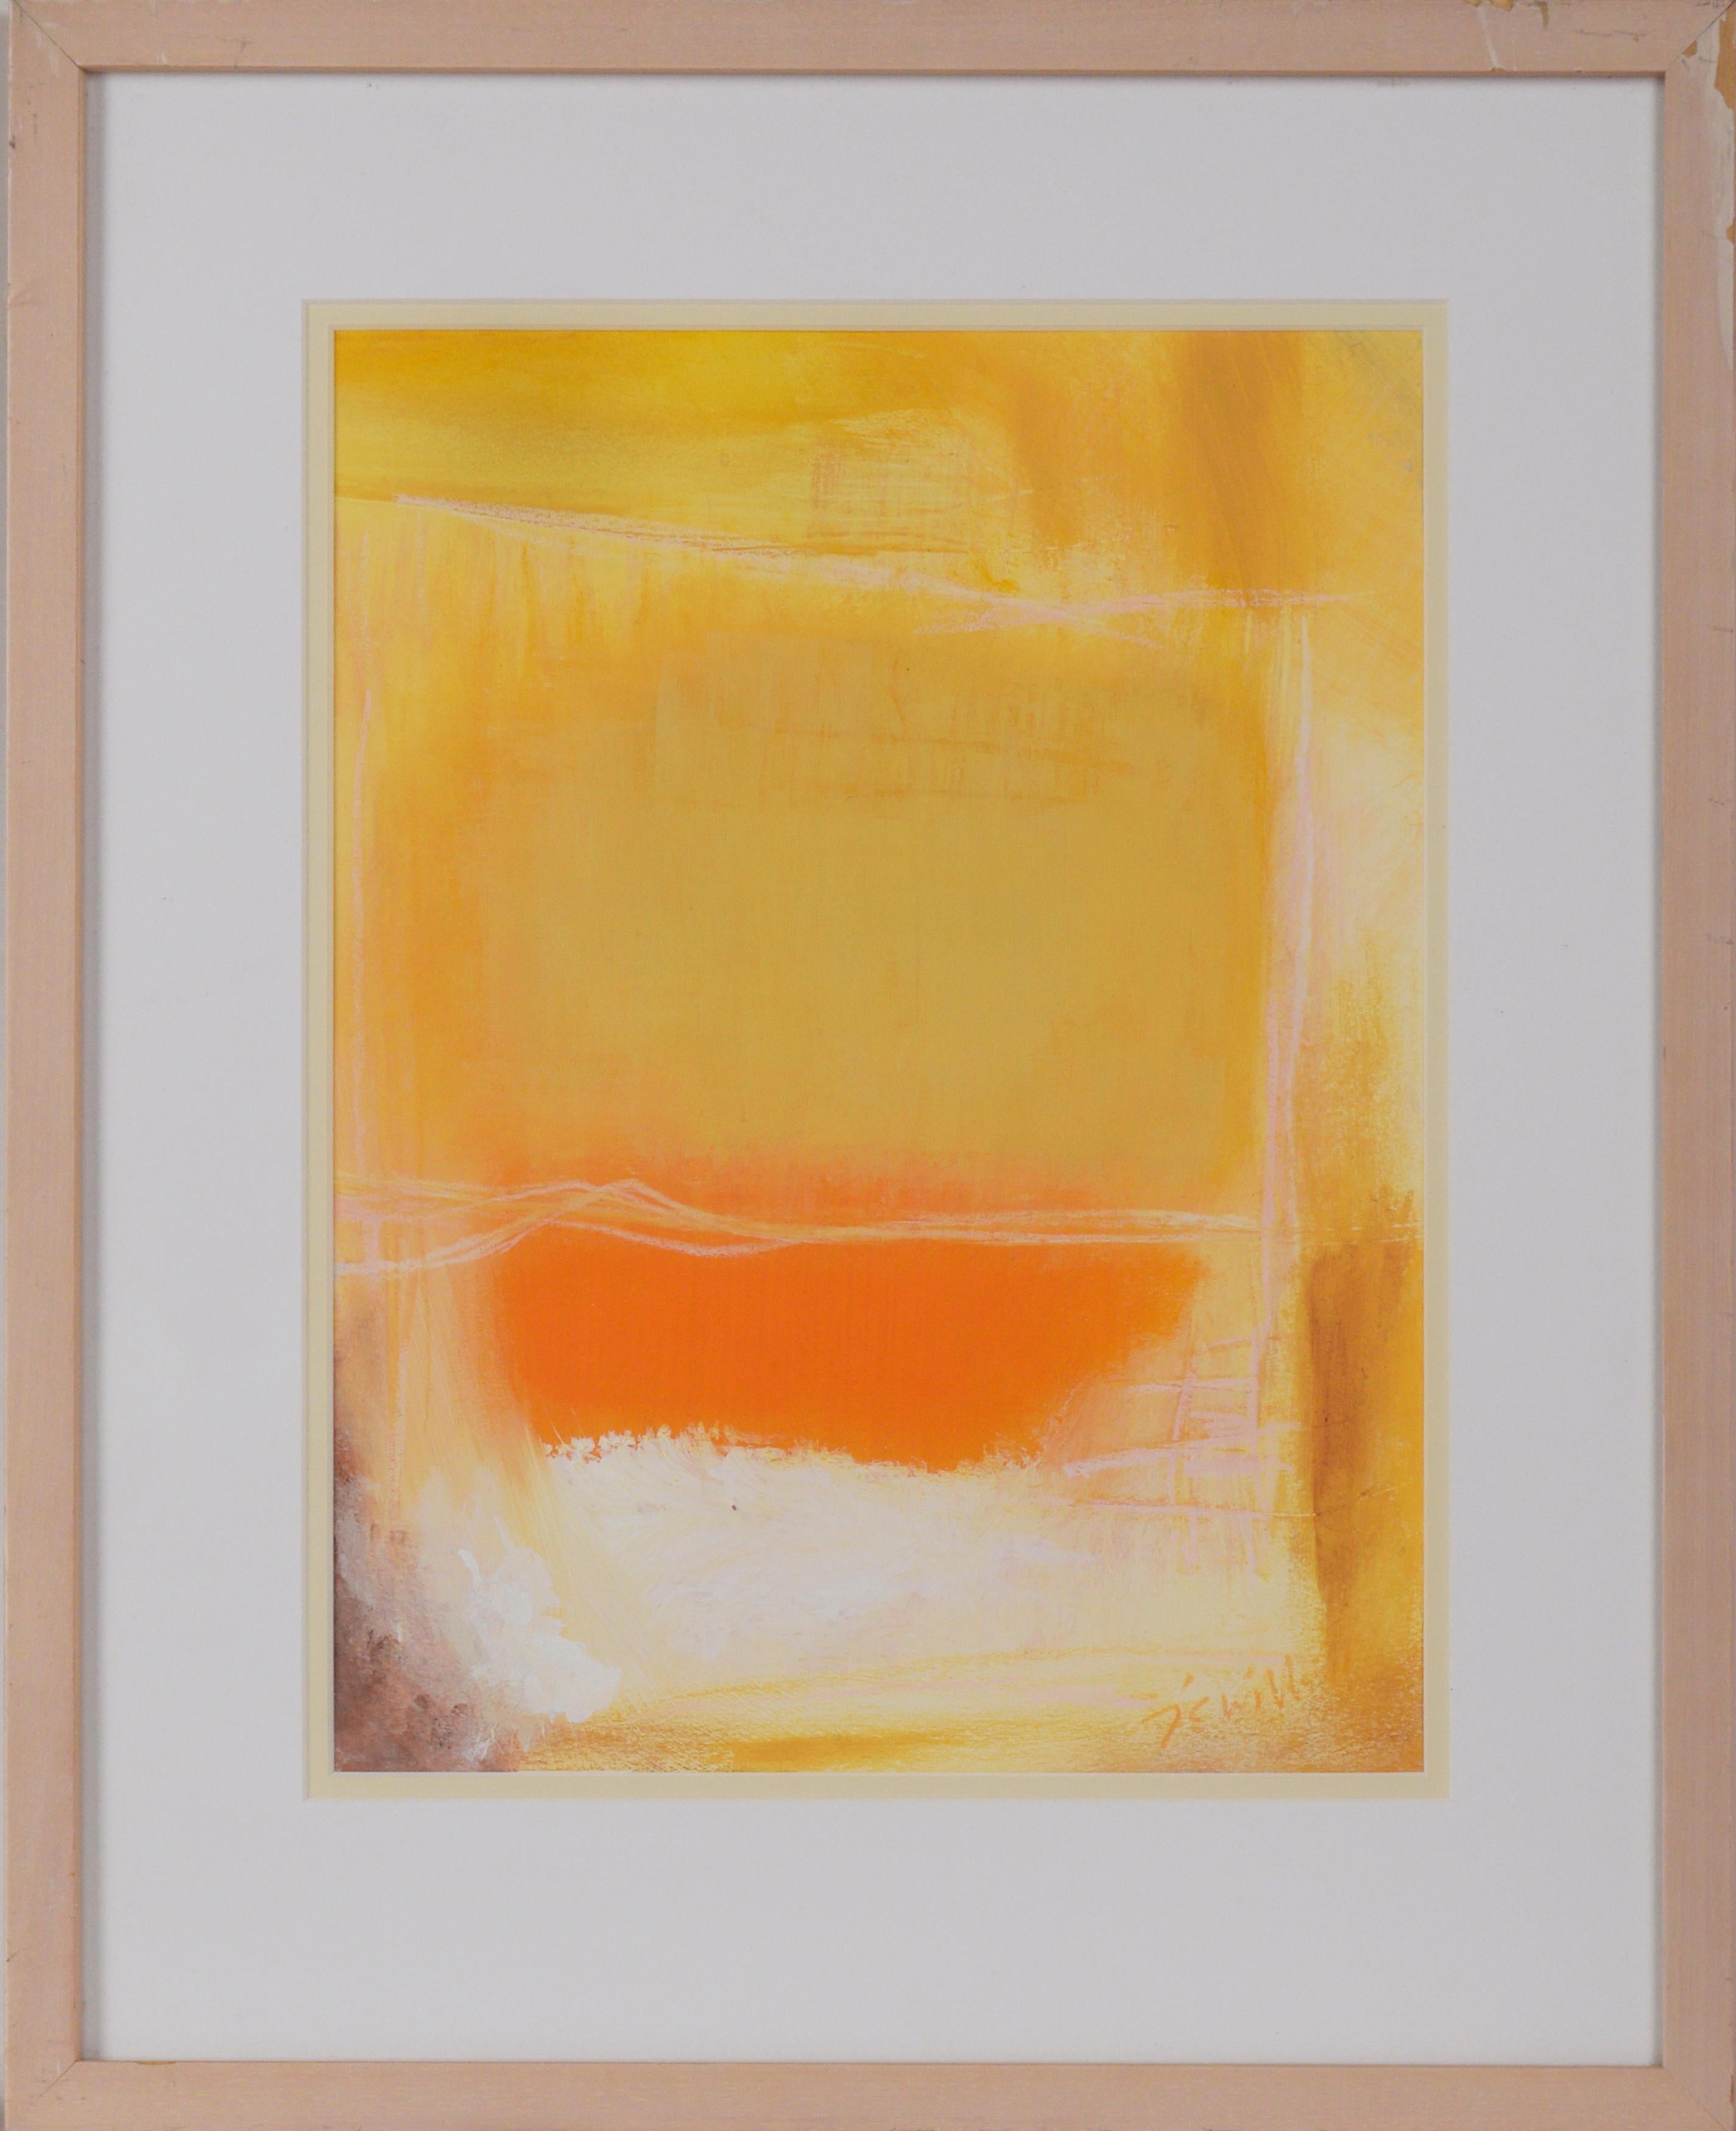 "Arising" - Abstrakter Fauvist - Stil von Rothko in Acryl auf Papier

Abstraktes Gemälde, das einen schwachen gelben Aquarellhintergrund mit verschiedenen Gelbtönen entlang der Ränder zeigt, die in die Mitte übergehen und sich mit Orange- und